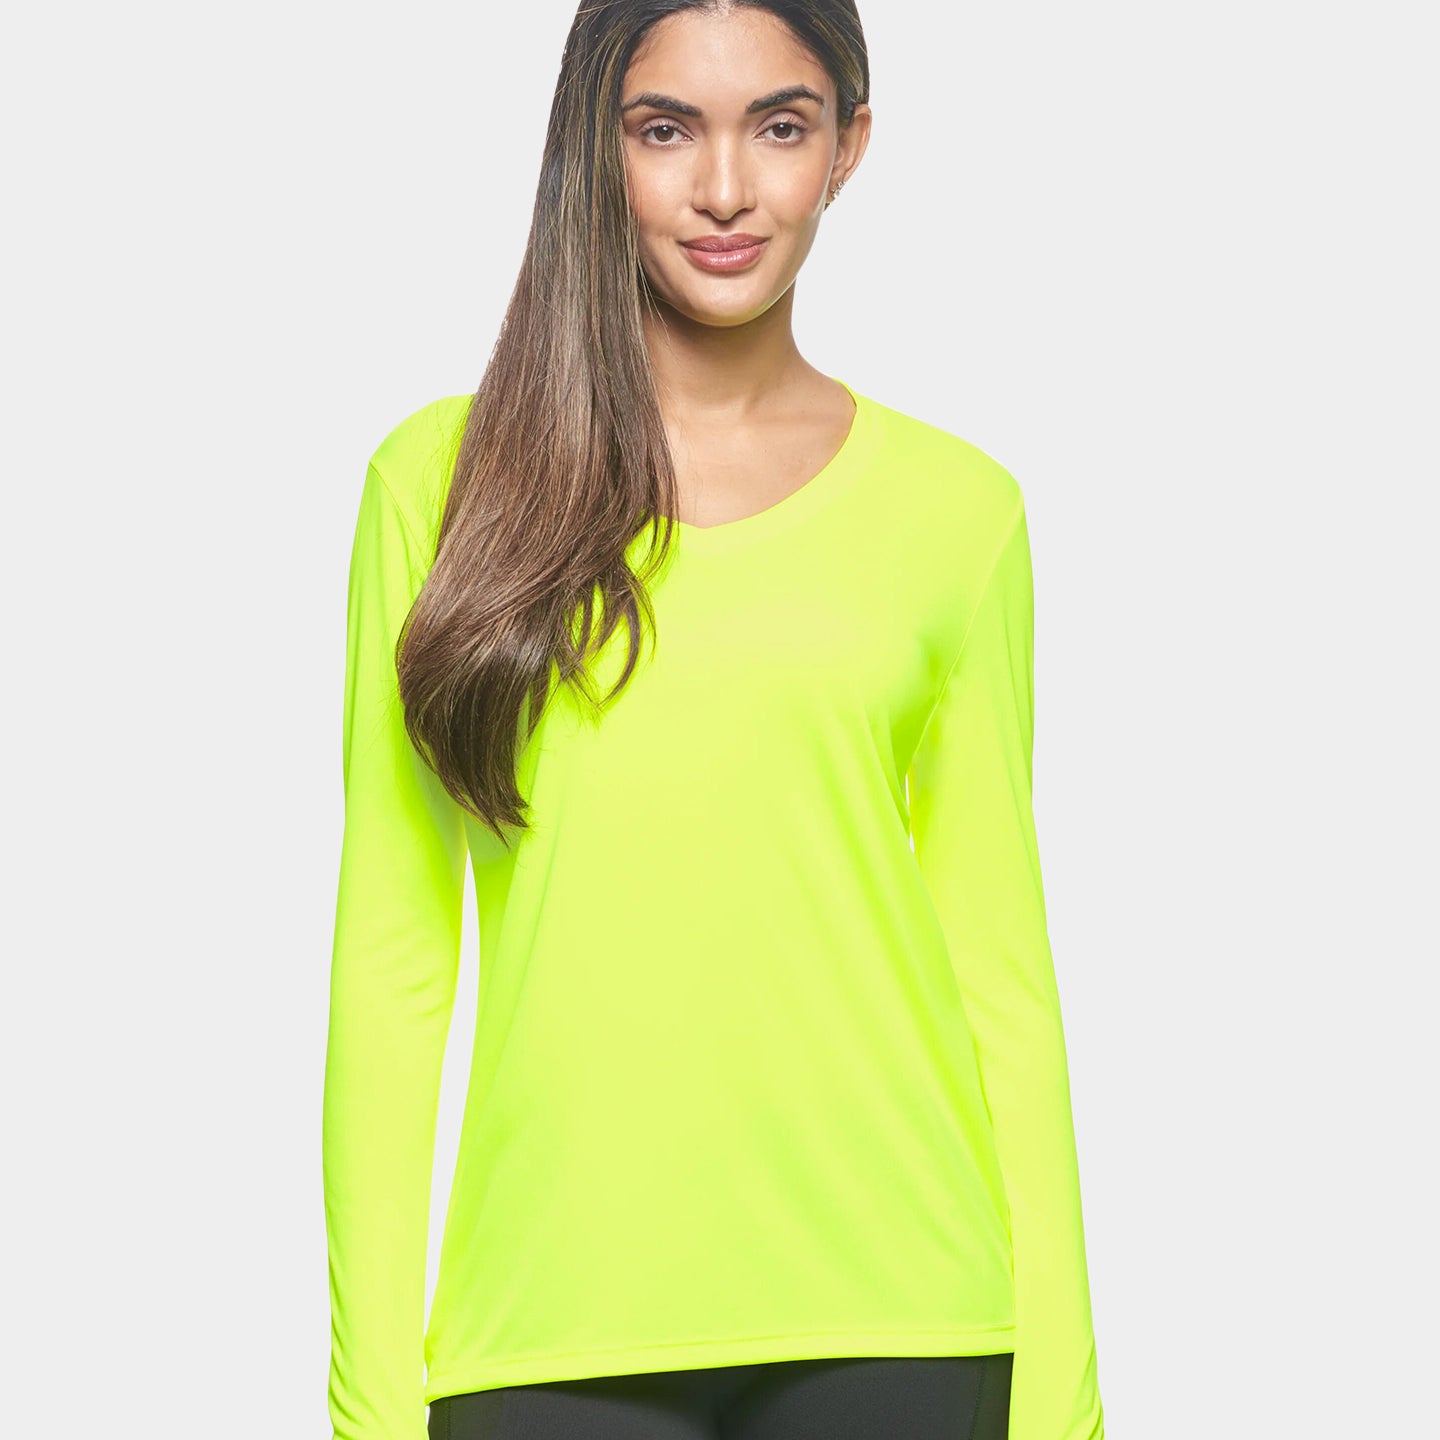 Expert Brand DriMax Women's Performance V-Neck Long Sleeve Shirt, S, Yellow A1